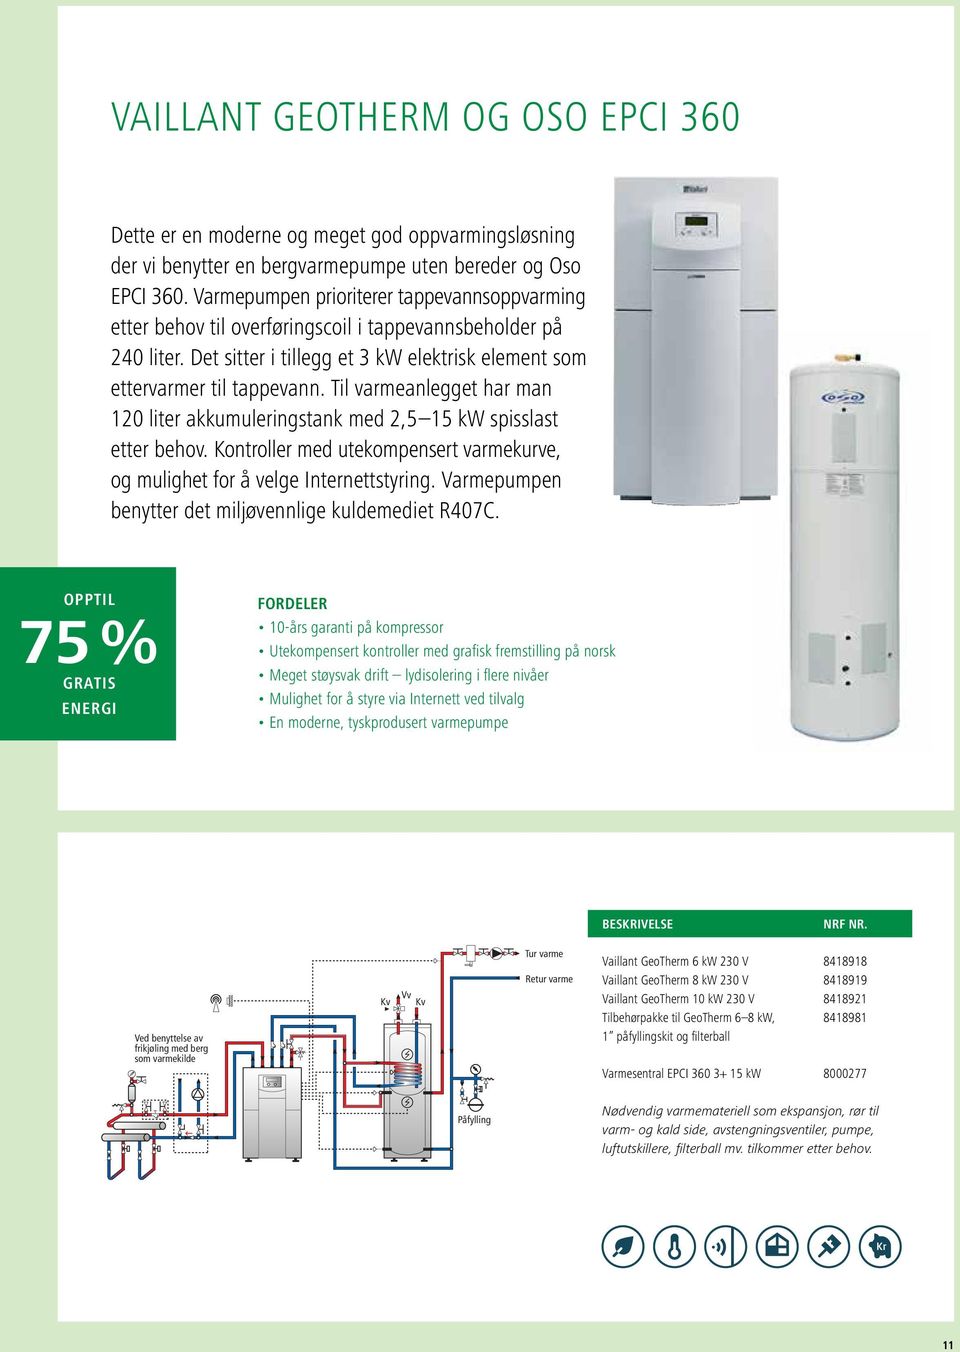 Til varmeanlegget har man 120 liter akkumuleringstank med 2,5 15 kw spisslast etter behov. Kontroller med utekompensert varmekurve, og mulighet for å velge Internettstyring.